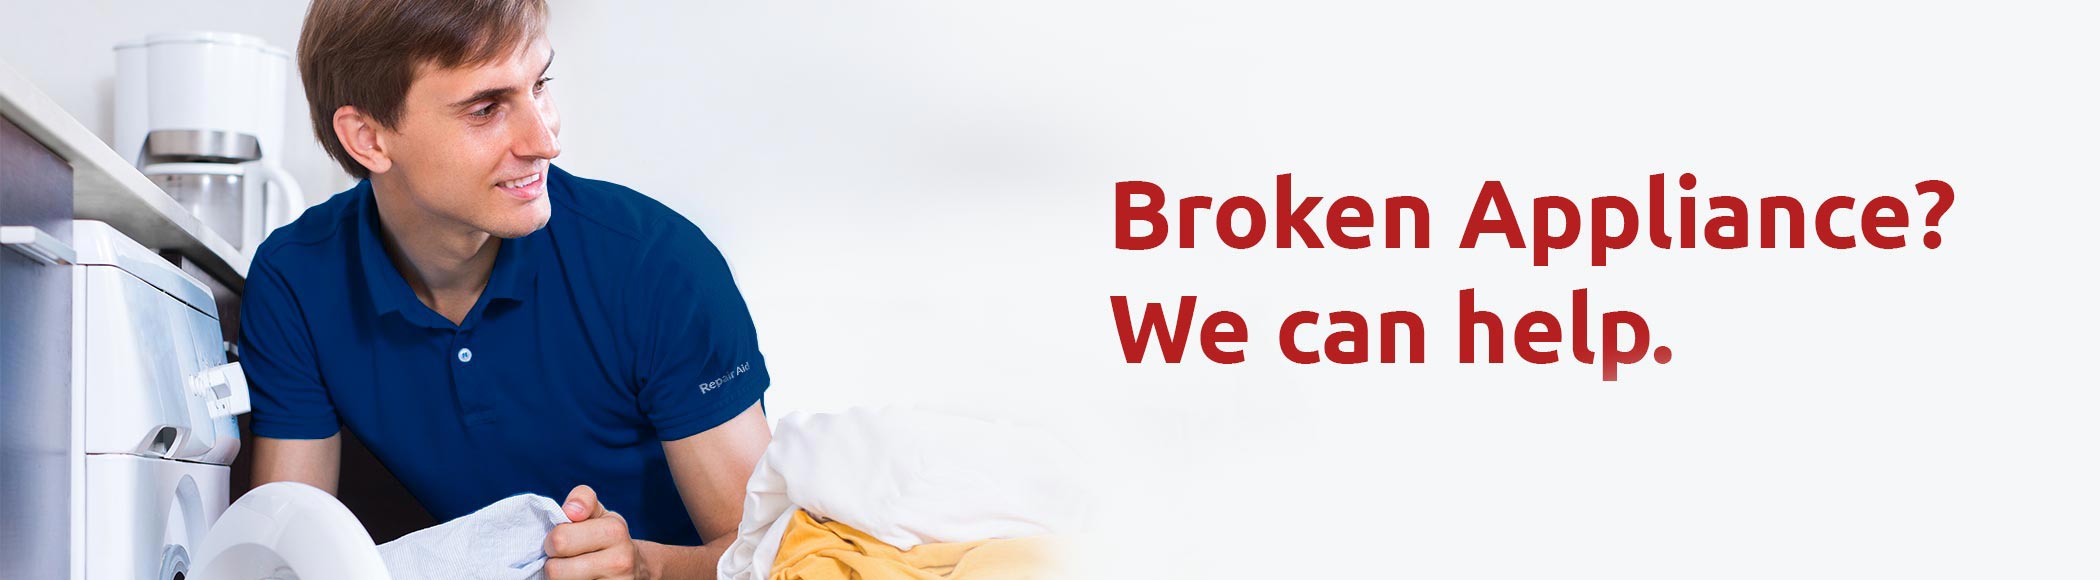 Broken Appliance? We can help.